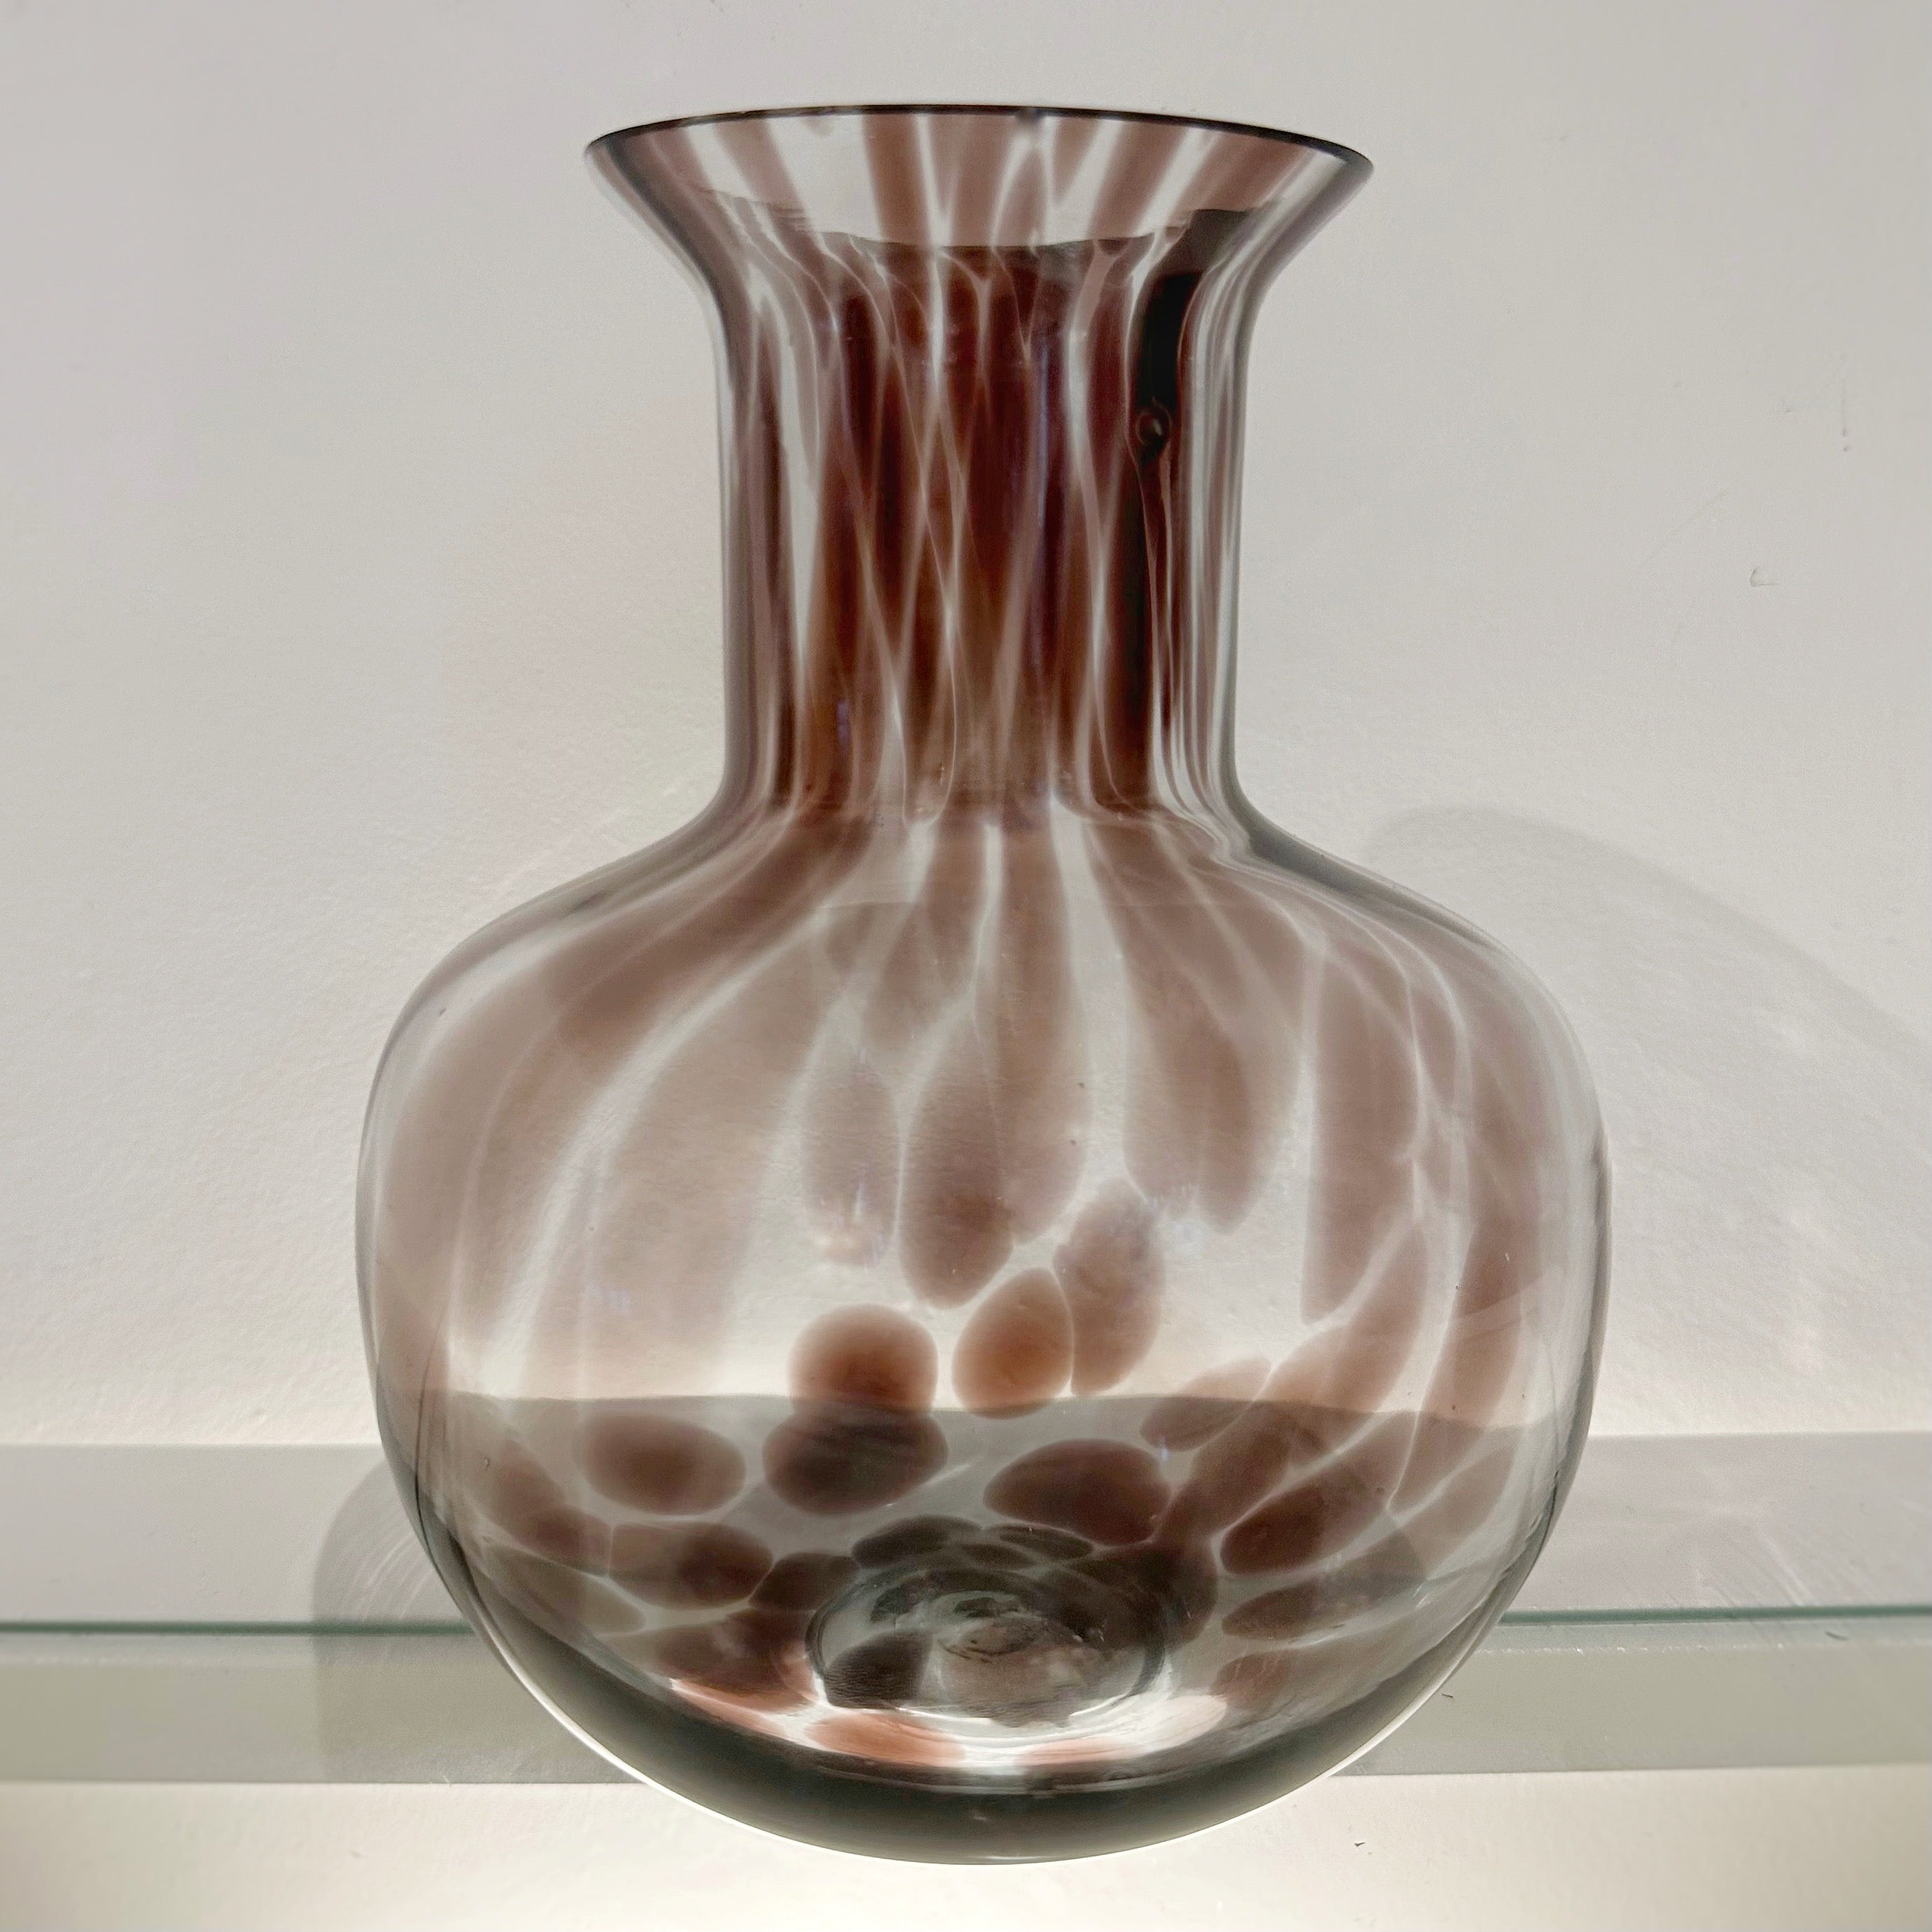 Tortoise Shell Effect Vase